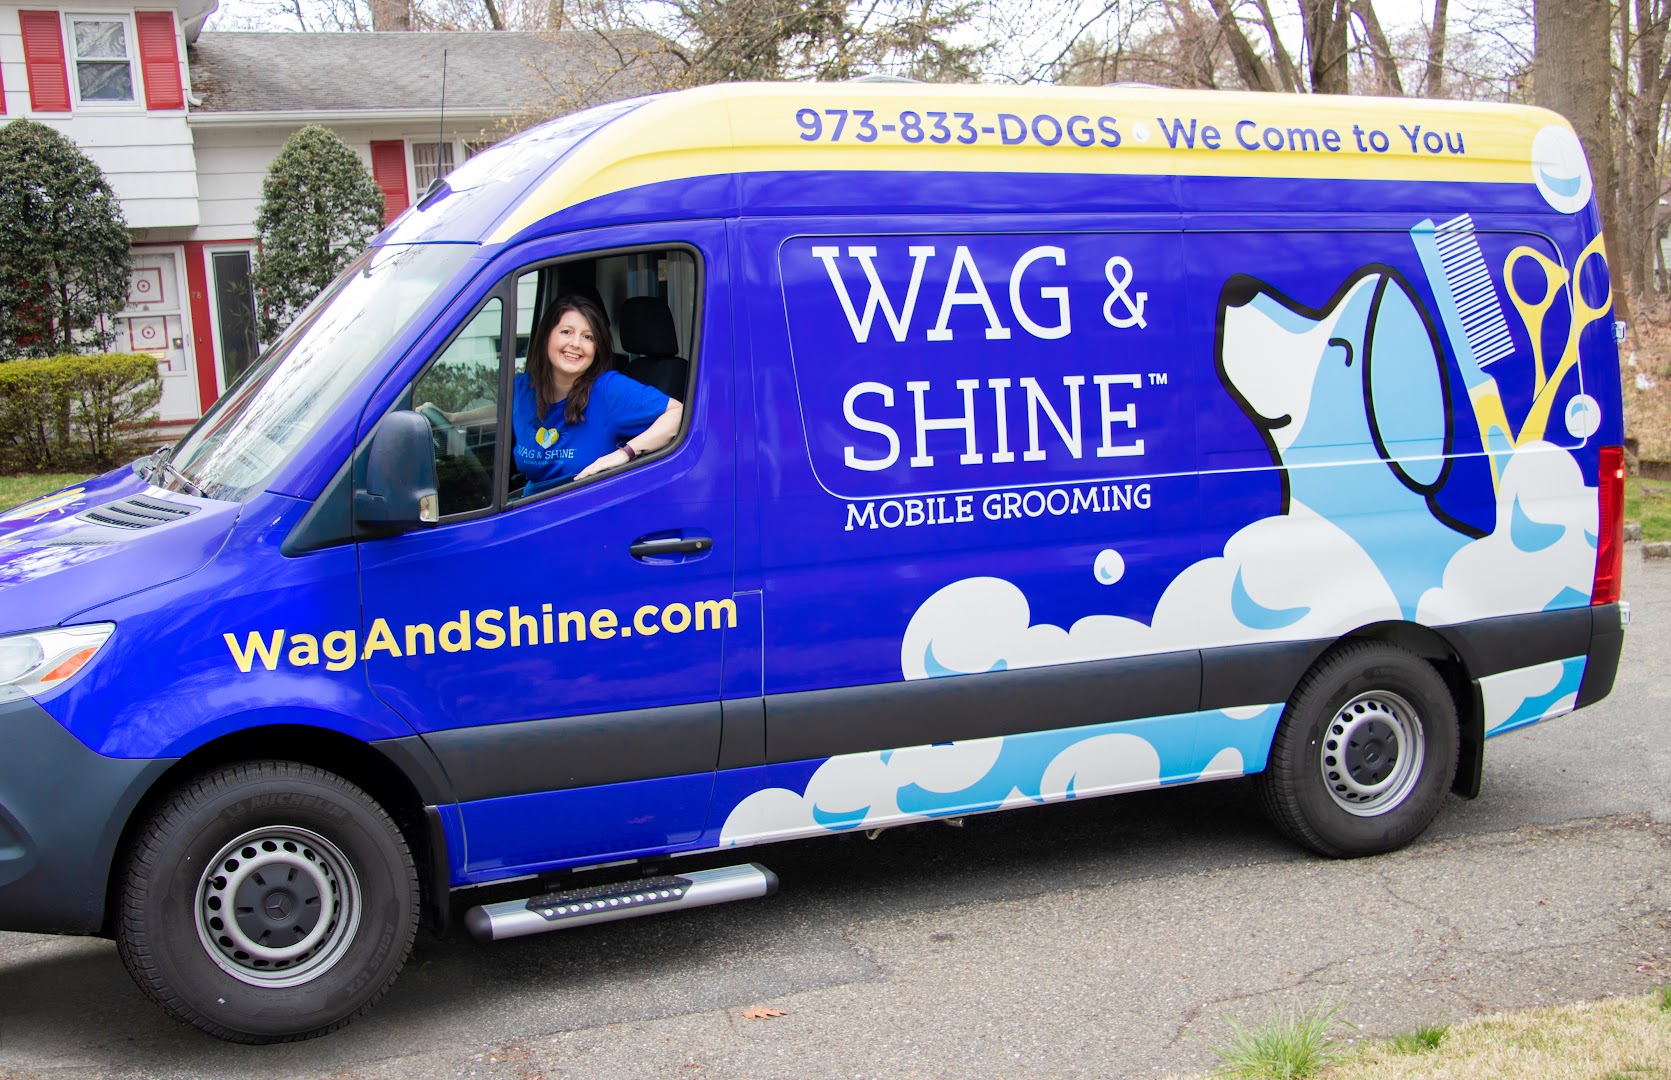 Wag & Shine Mobile Grooming